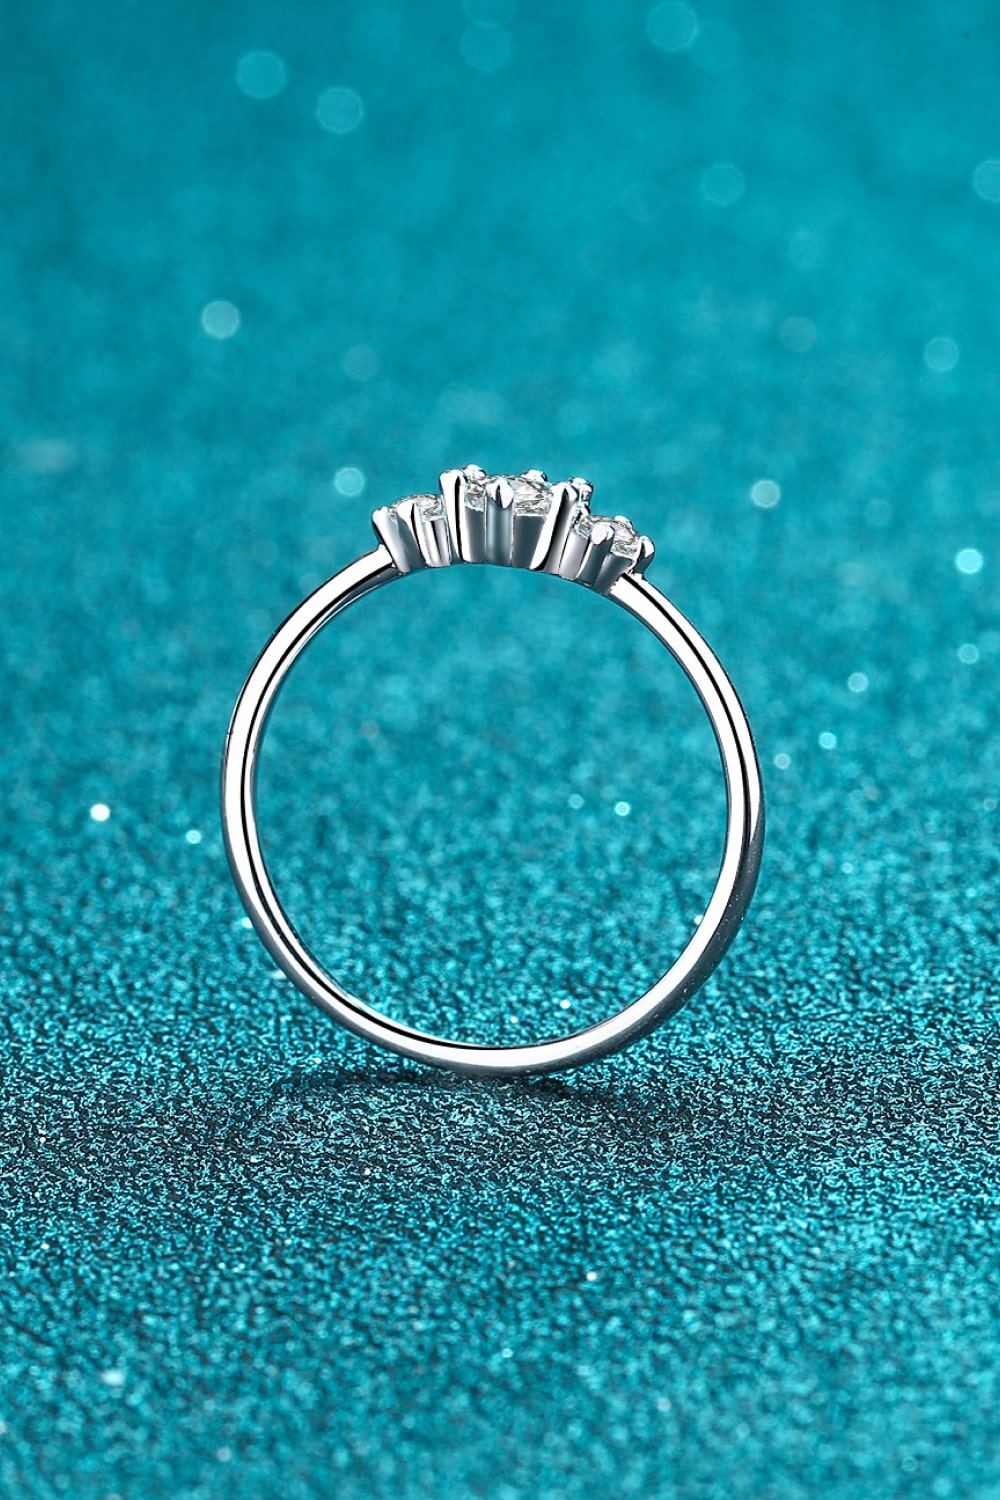 Moissanite 925 Sterling Silver Ring